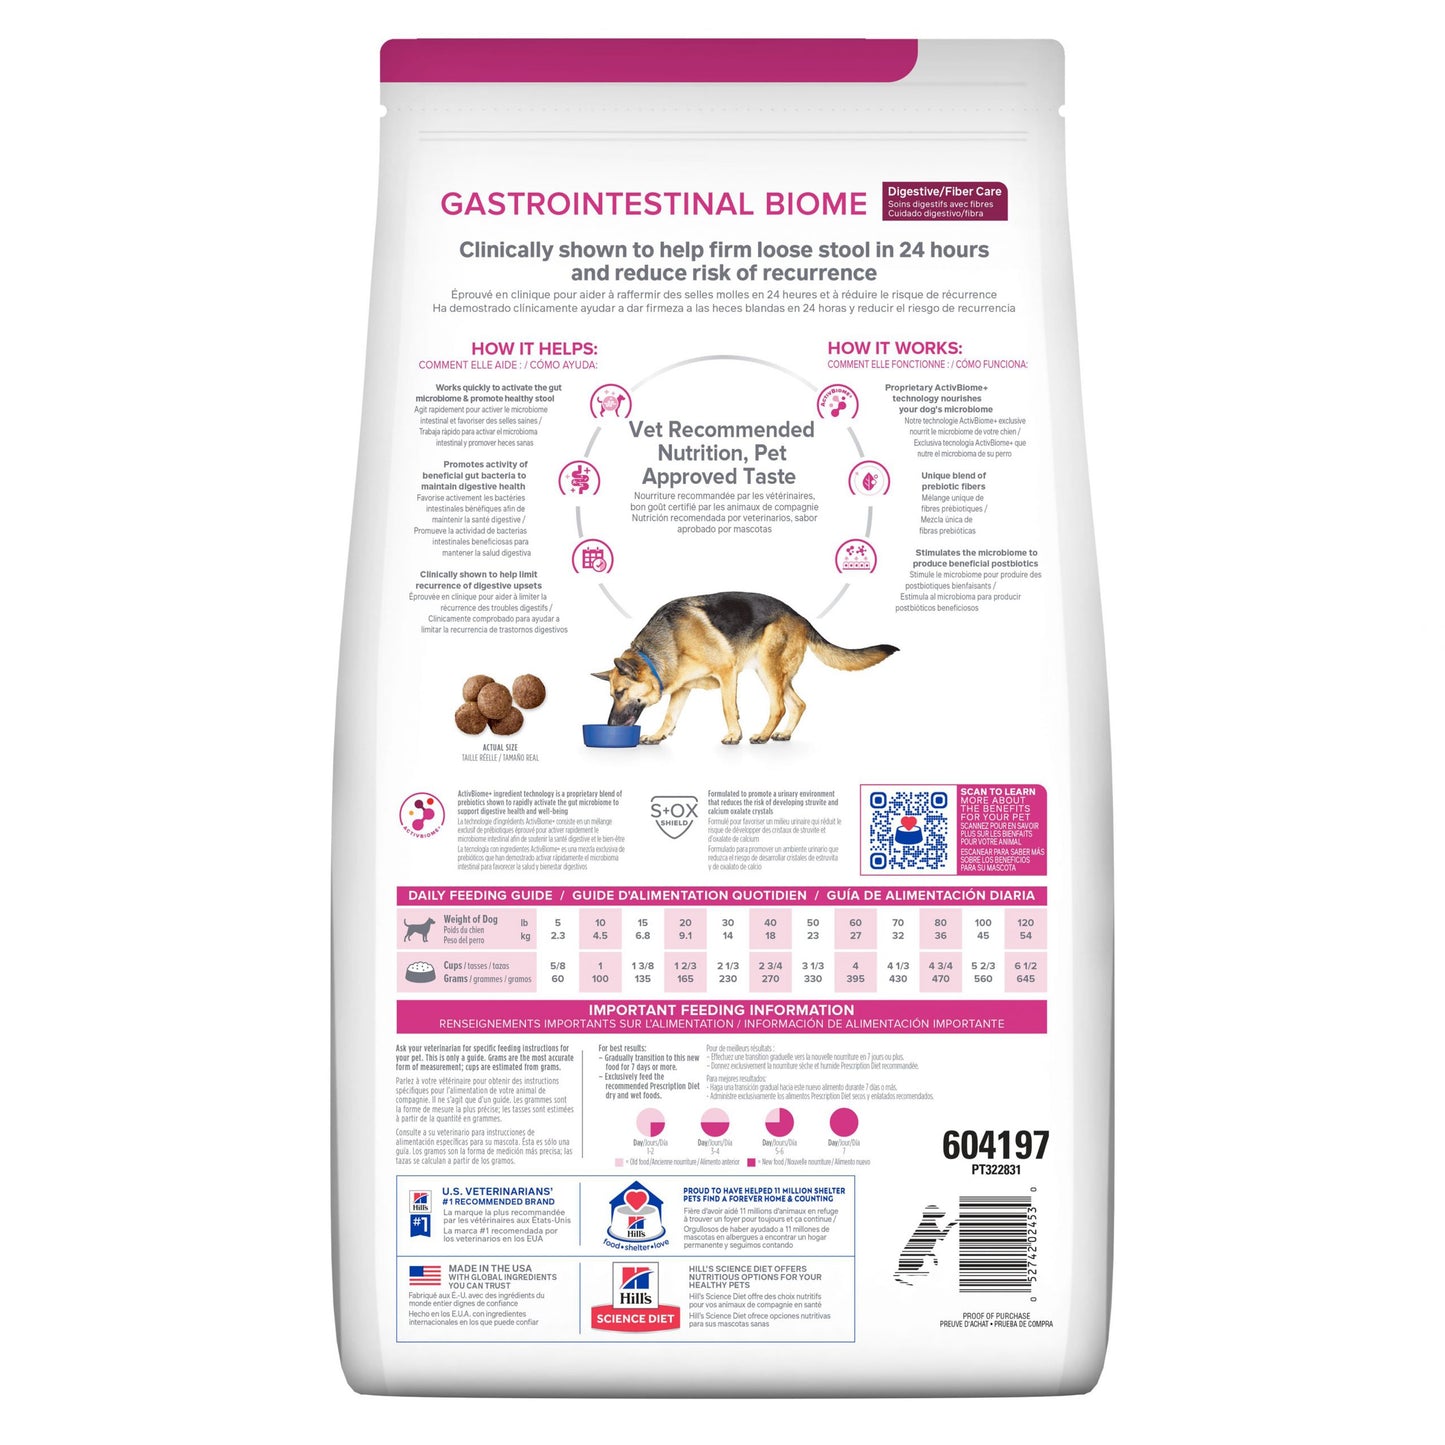 Hill's Prescription Diet Gastrintestinal Biome Canine